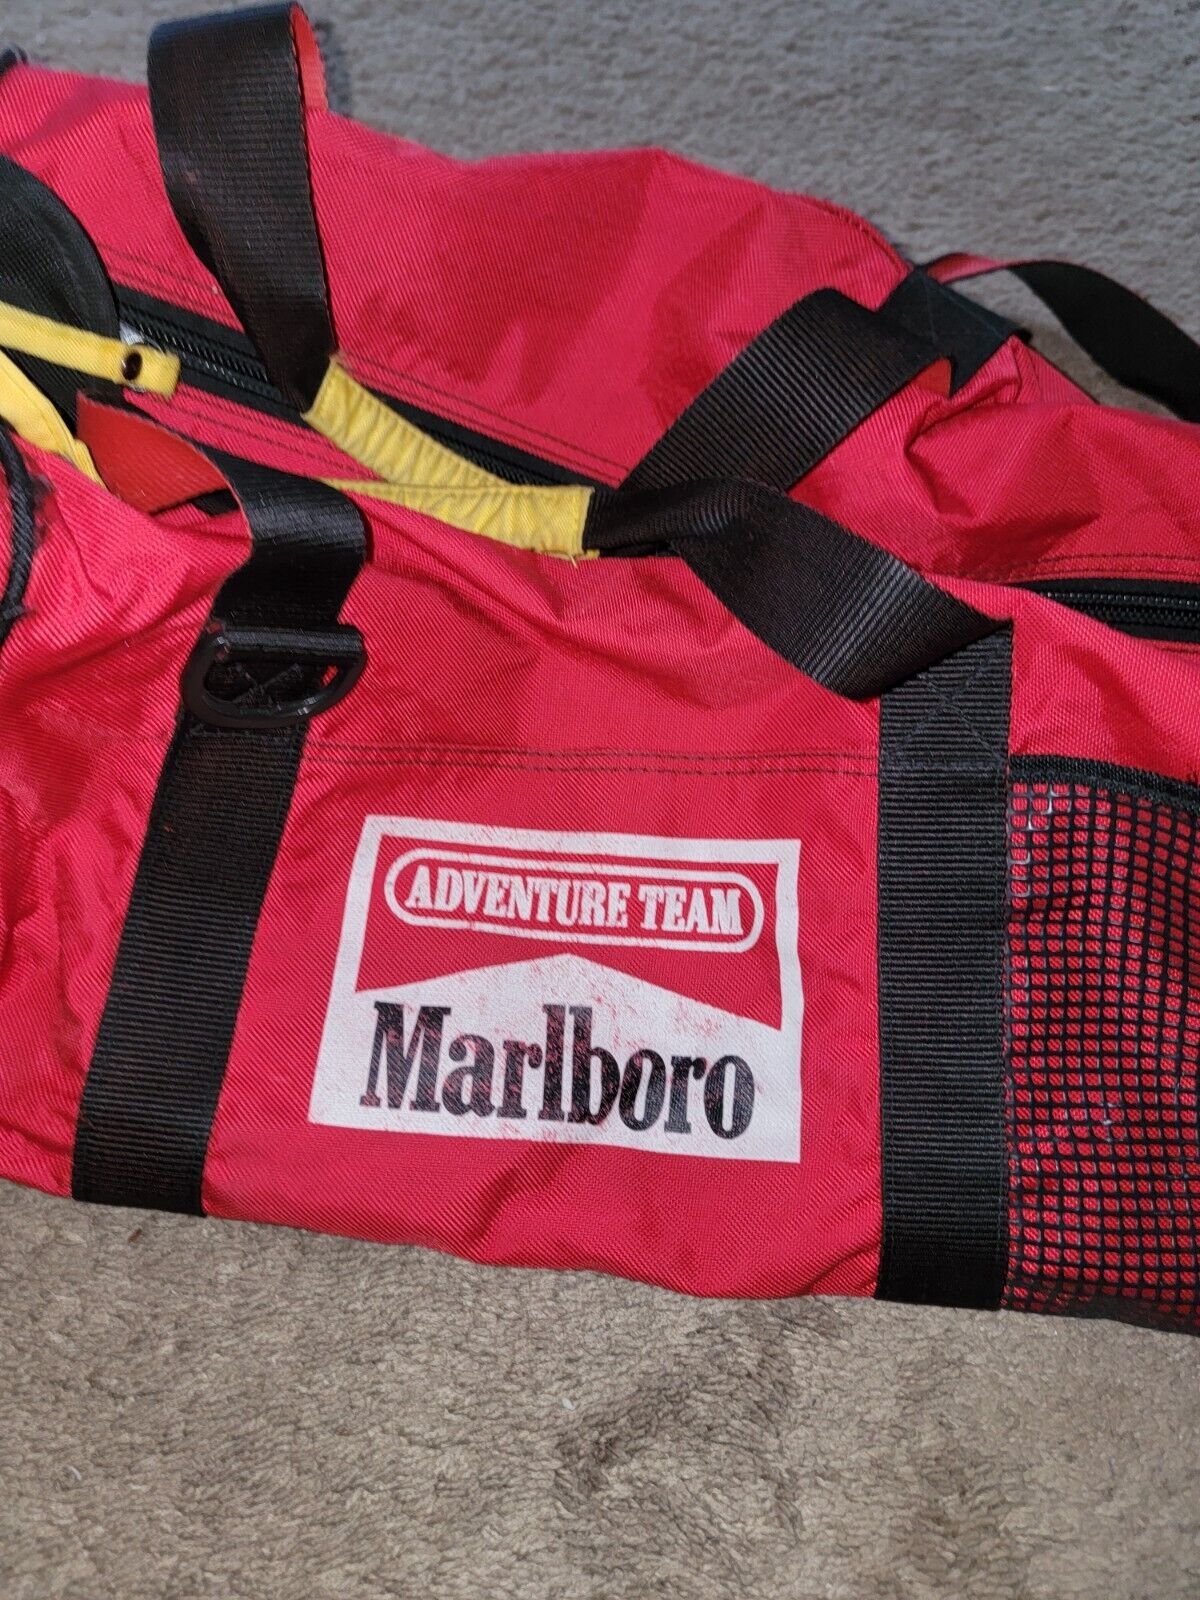 Vintage Marlboro Adventure Team Duffle Bag